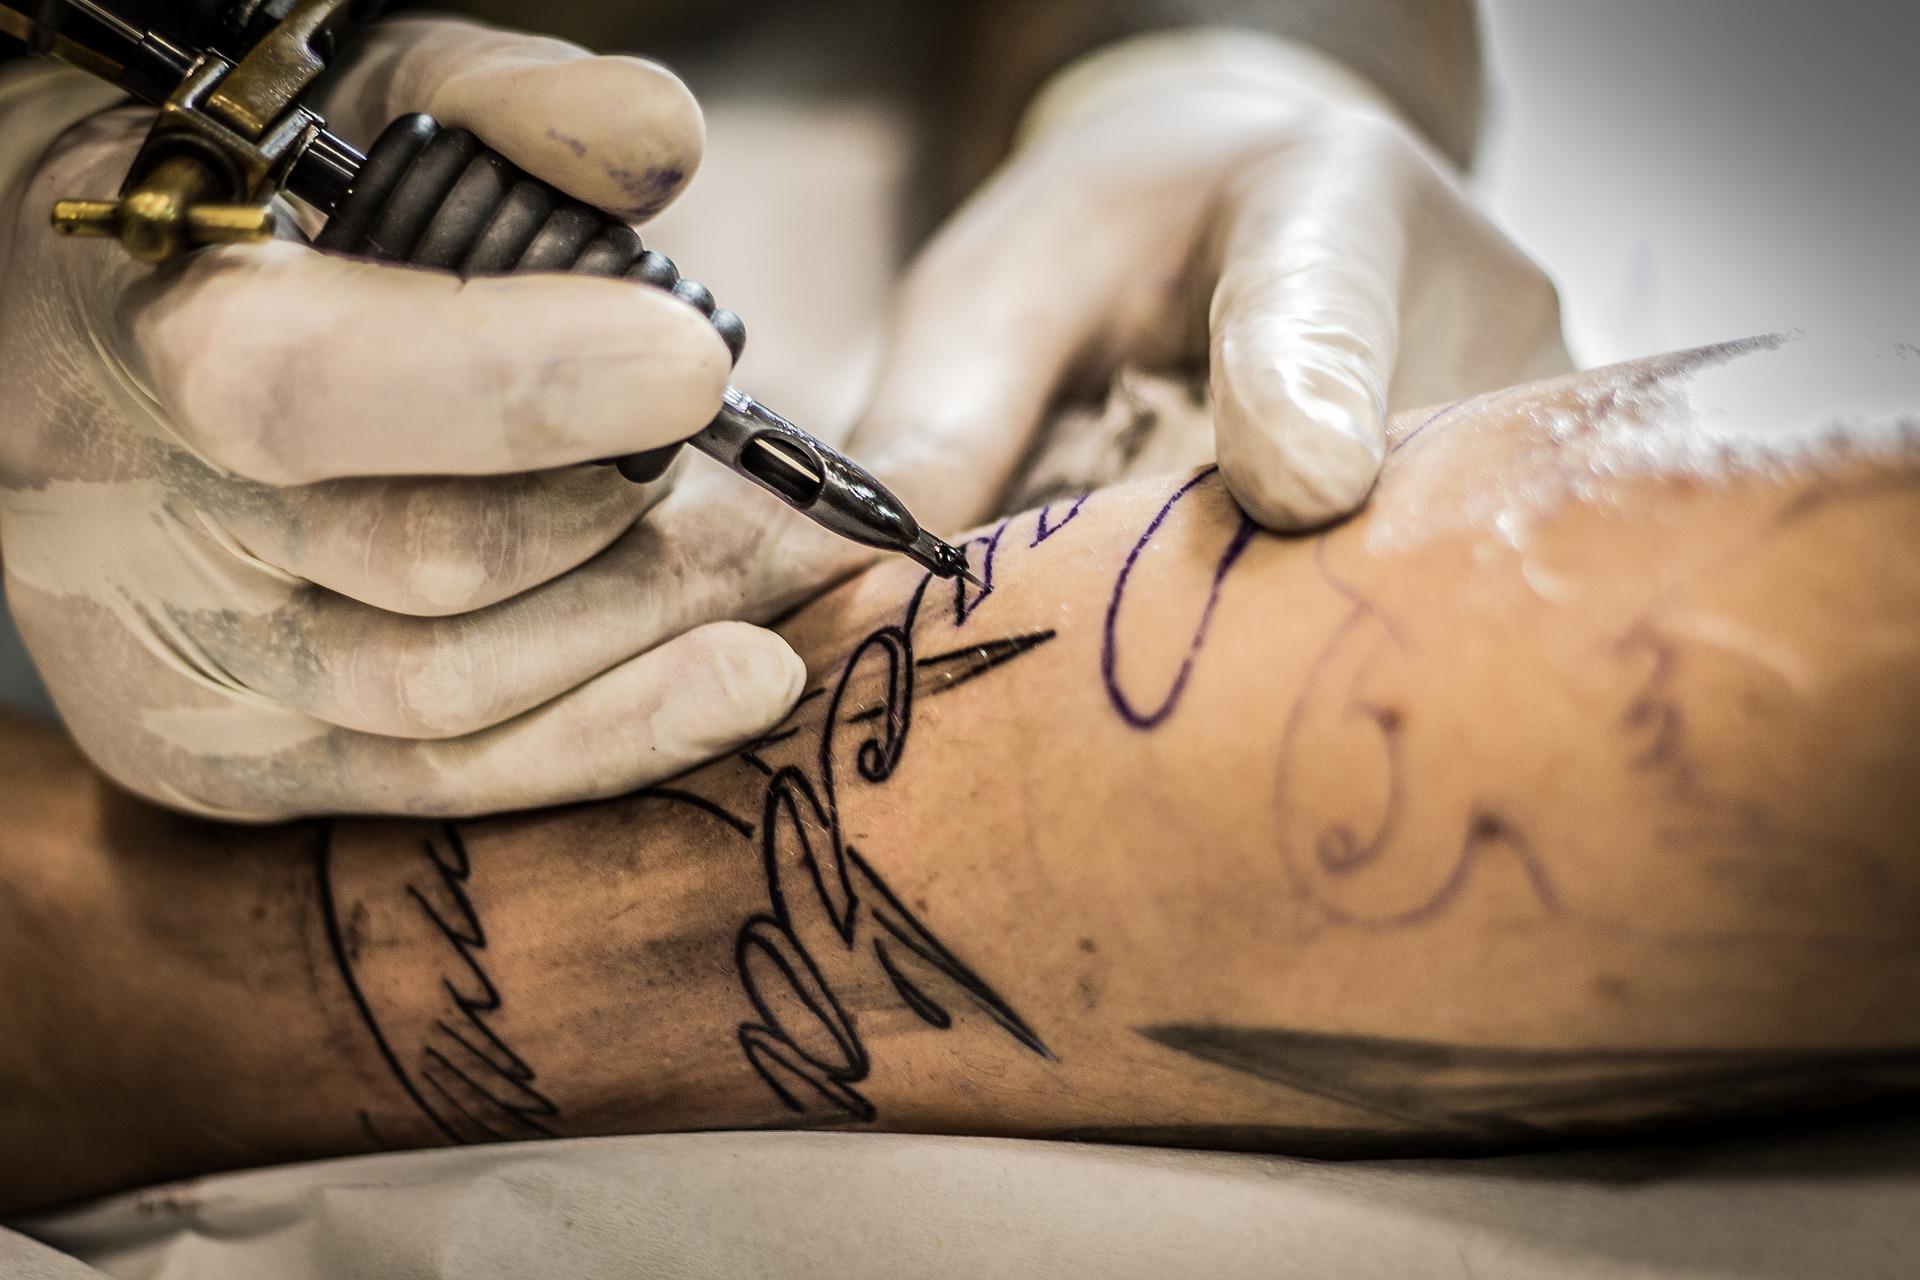 Descubra as 5 tatuagens ligadas ao crime que você nunca deve fazer